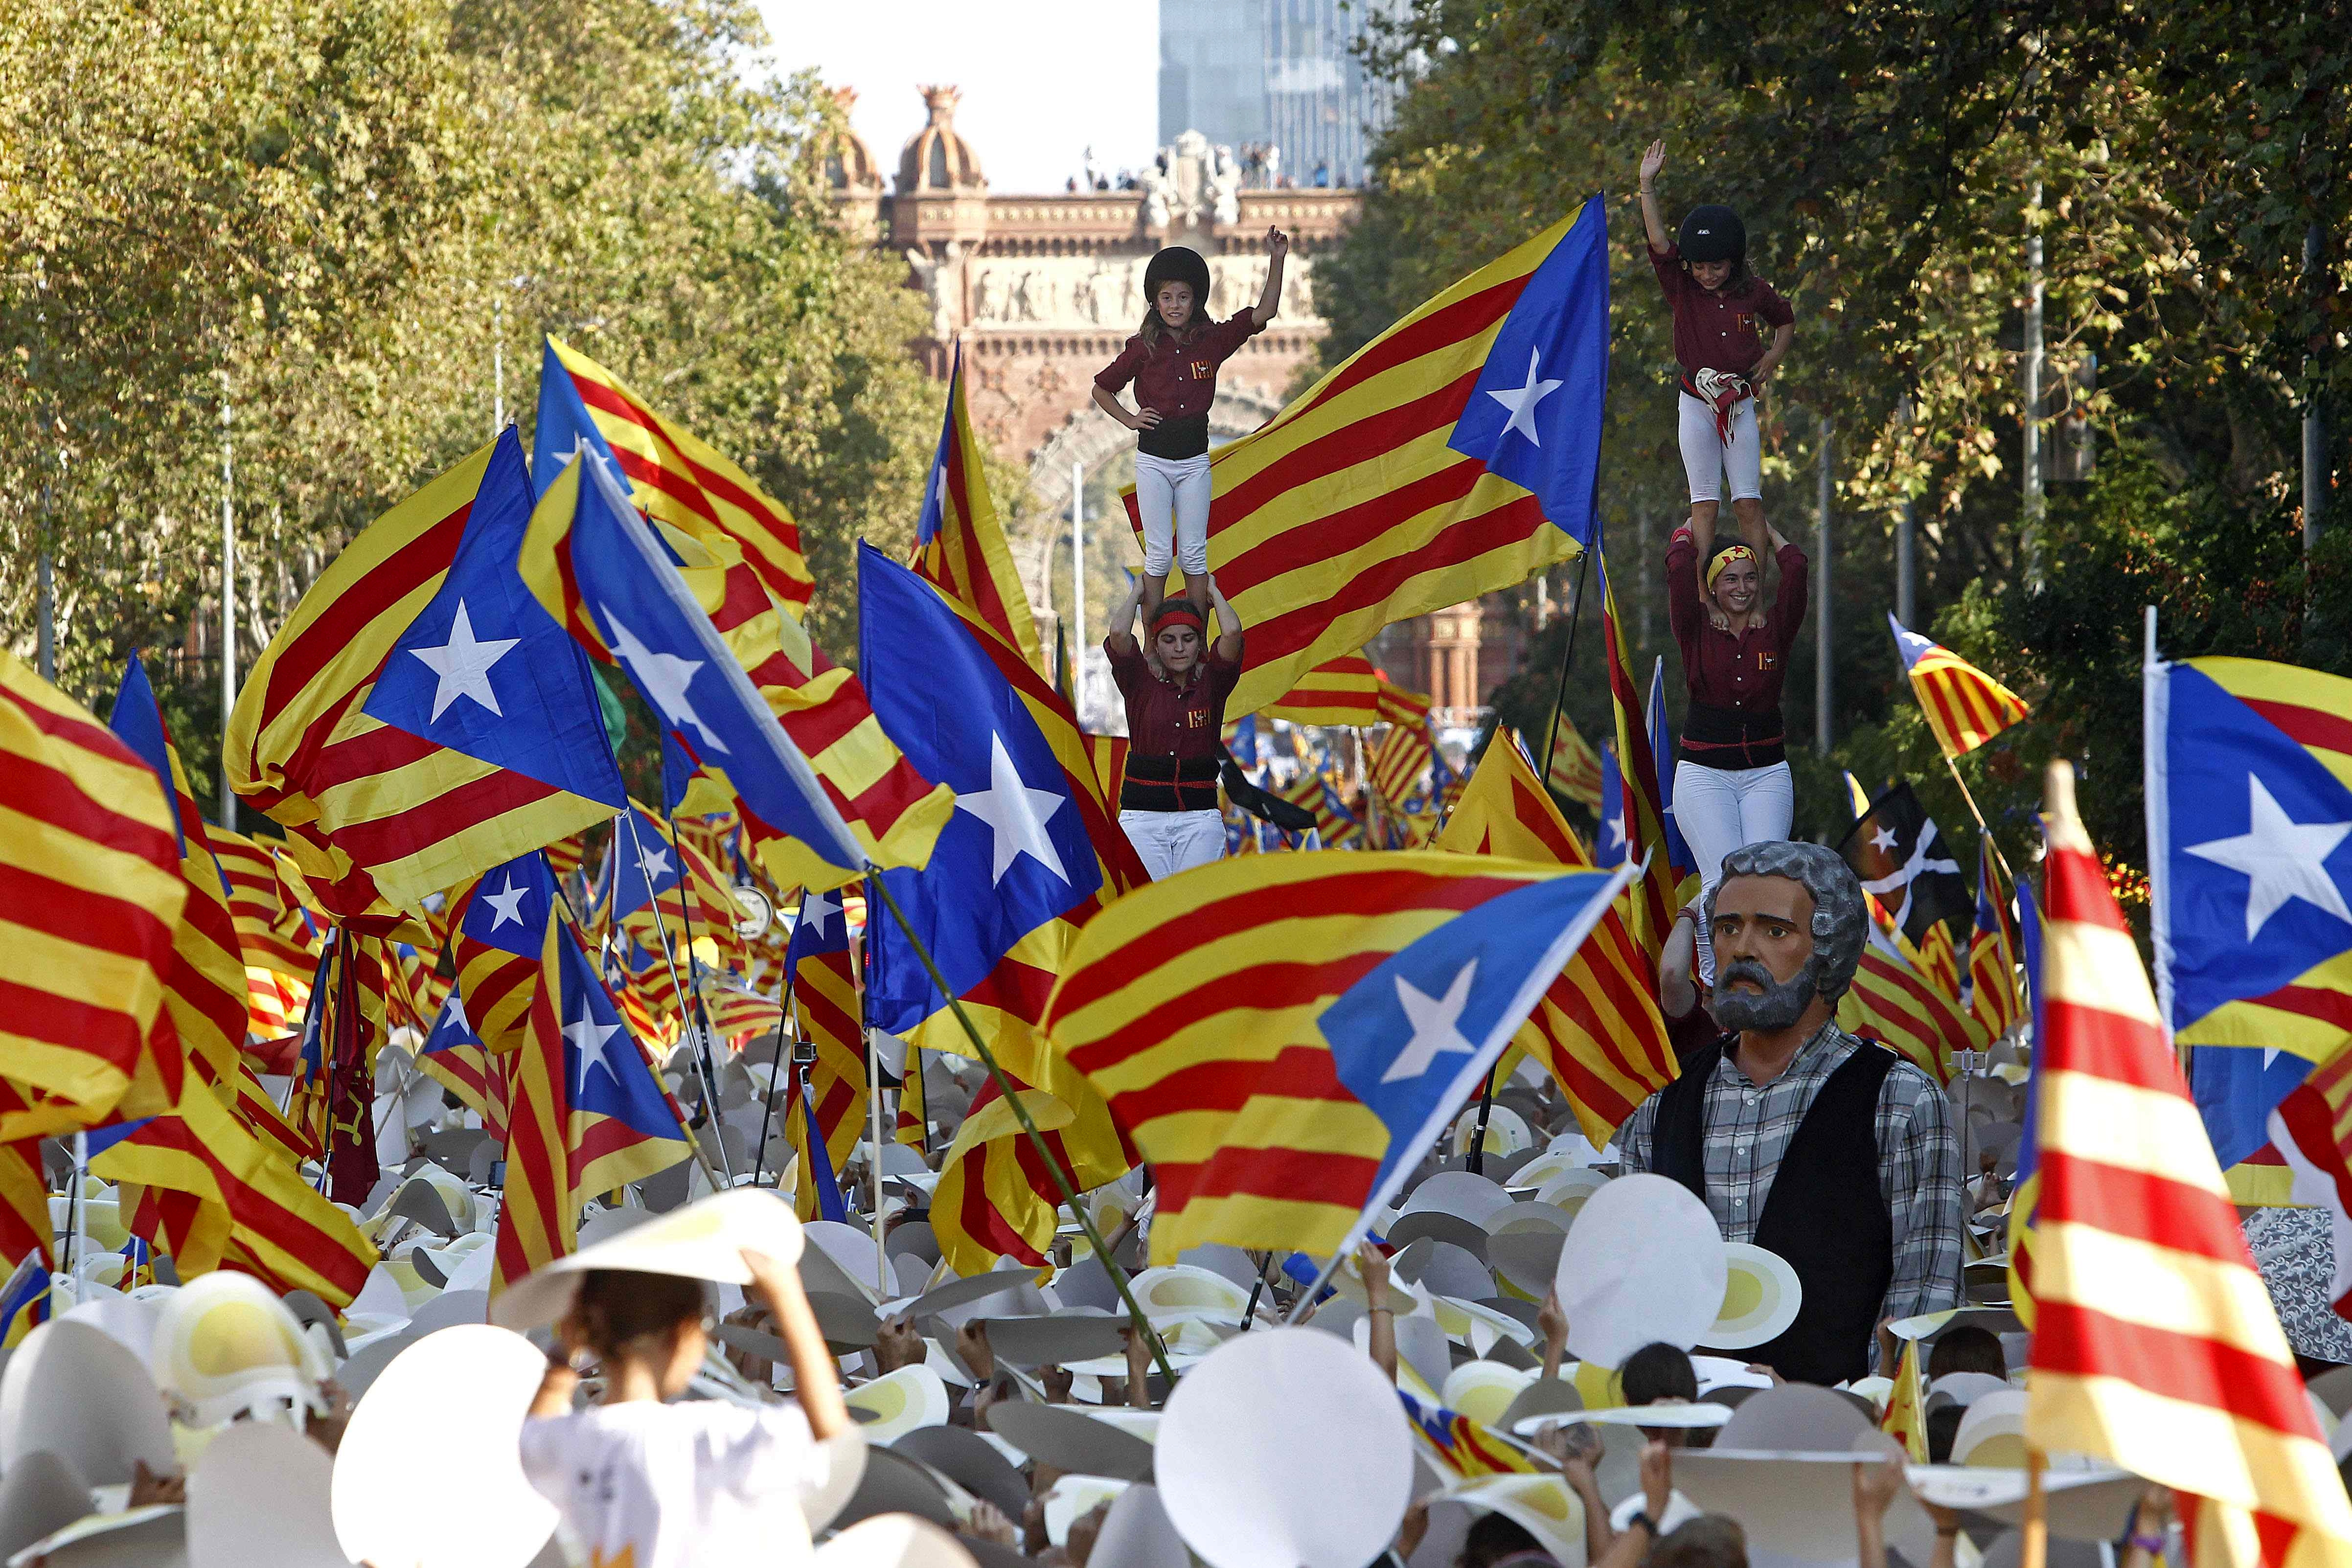 La victoria de los independentistas en las elecciones autonómicas podría reflejar la aprobación de la sociedad catalana al proceso separatista.